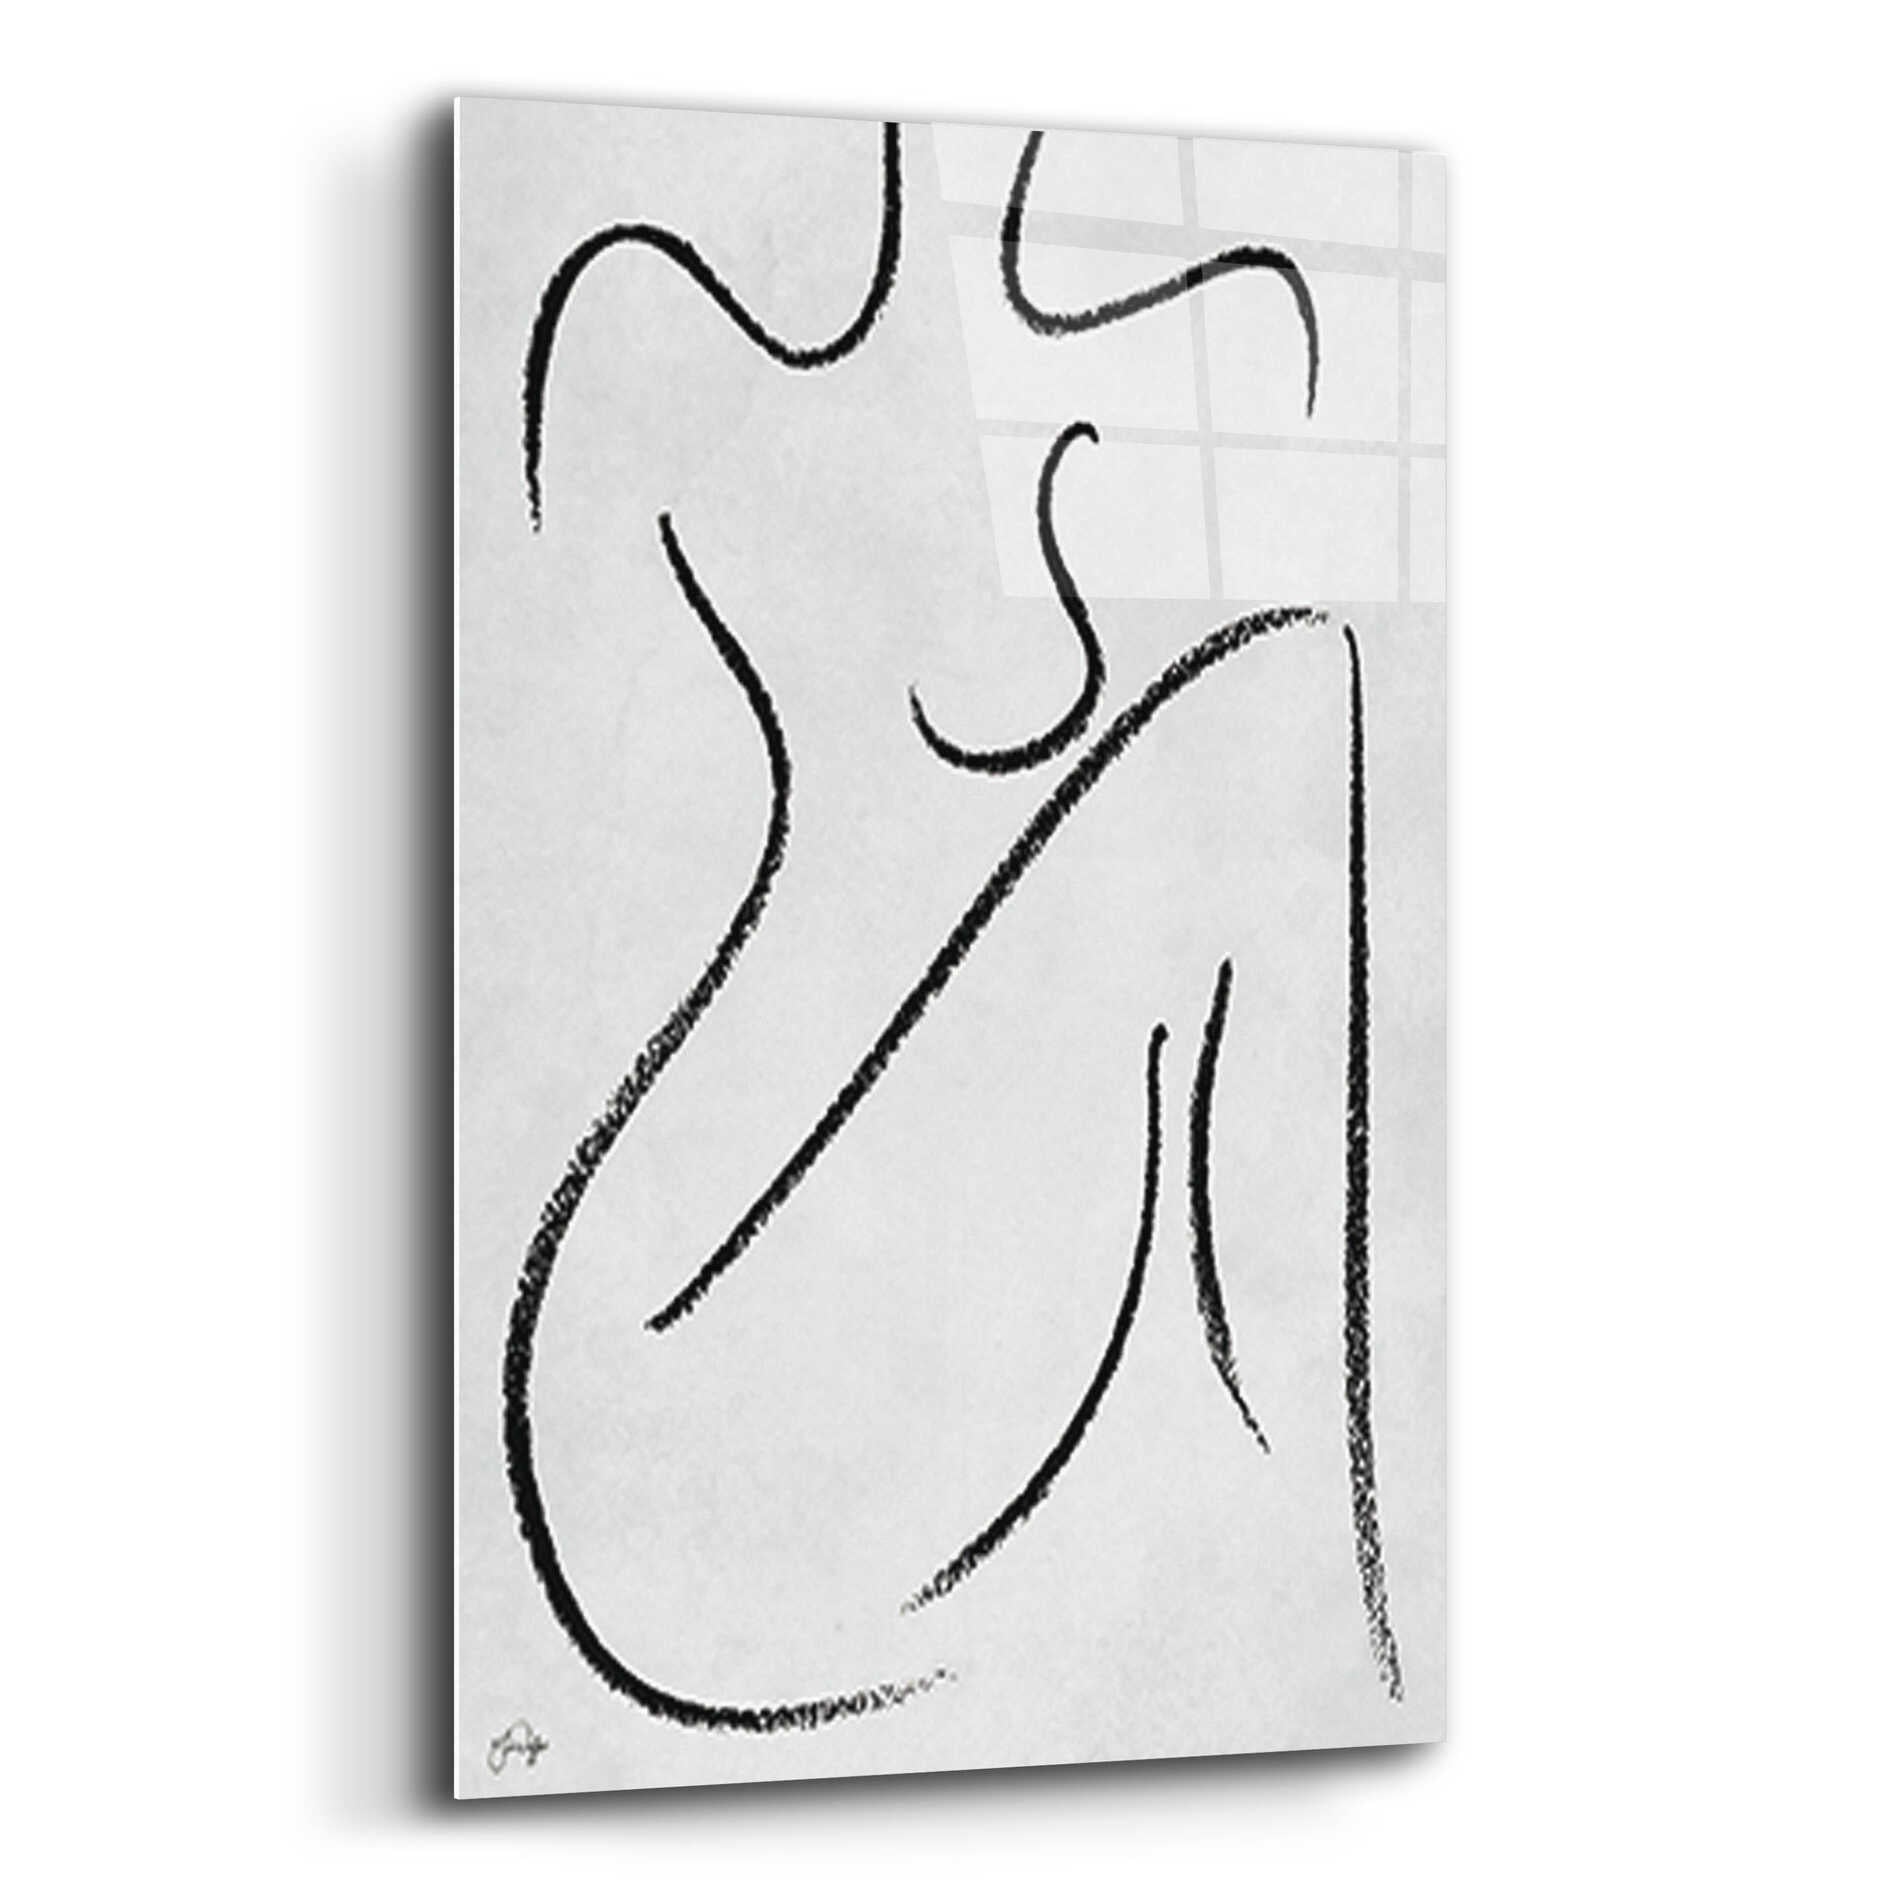 Epic Art 'Sitting Woman' by Yass Naffas Designs, Acrylic Glass Wall Art,16x24